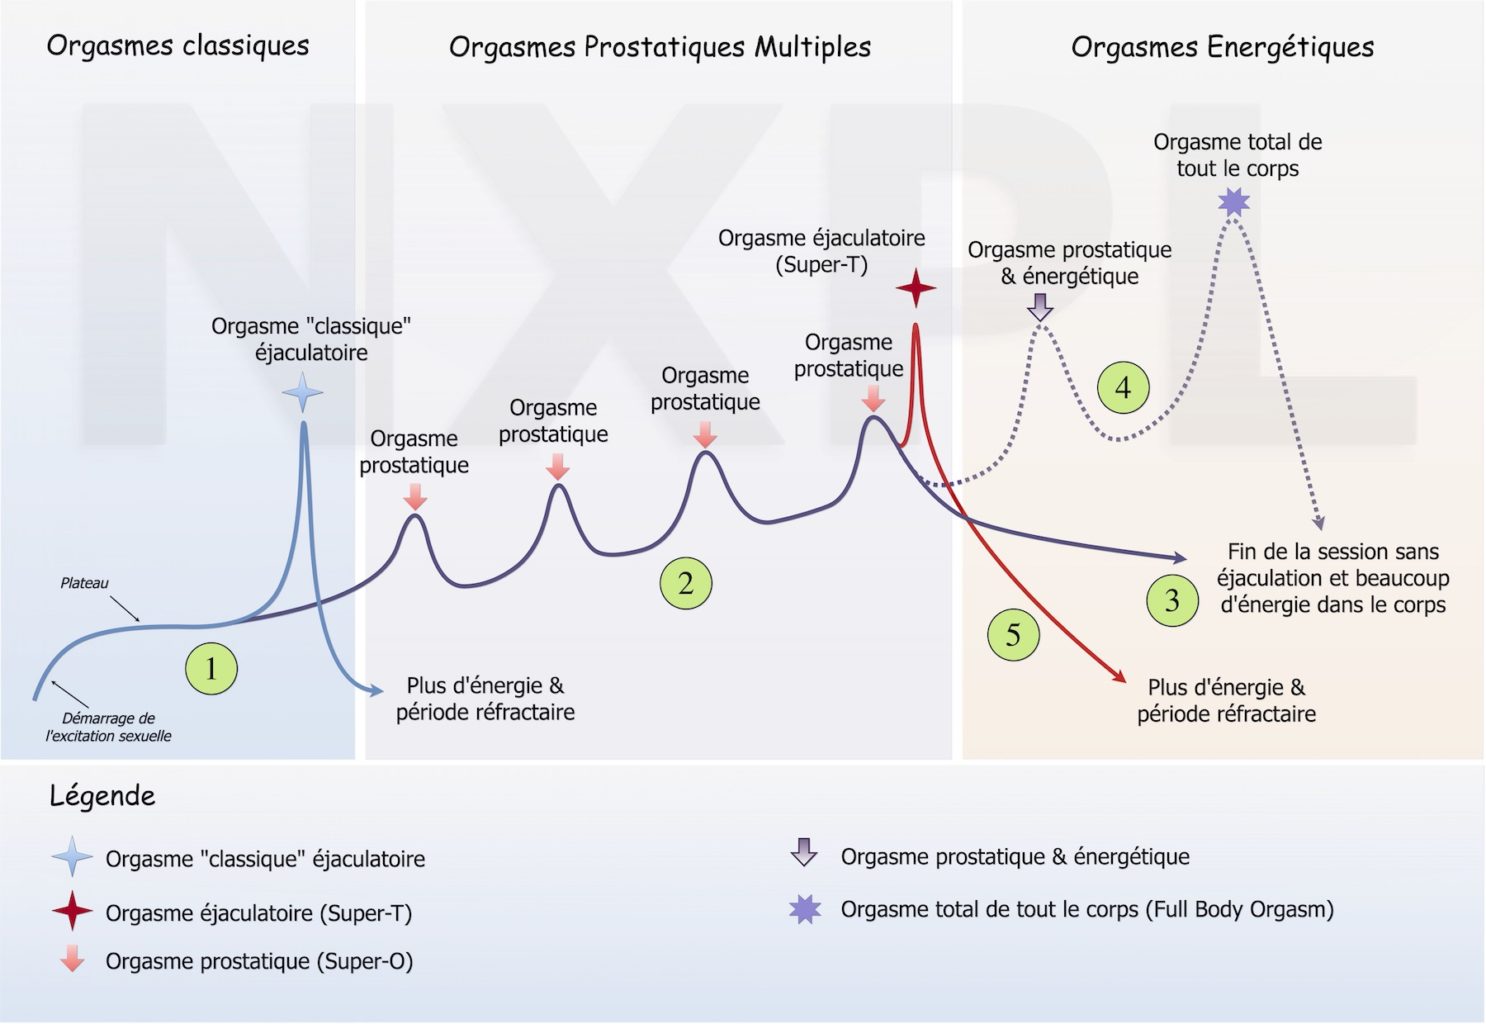 Voici la courbes des orgasmes pour les hommes et les différents orgasmes prostatiques et énergétiques